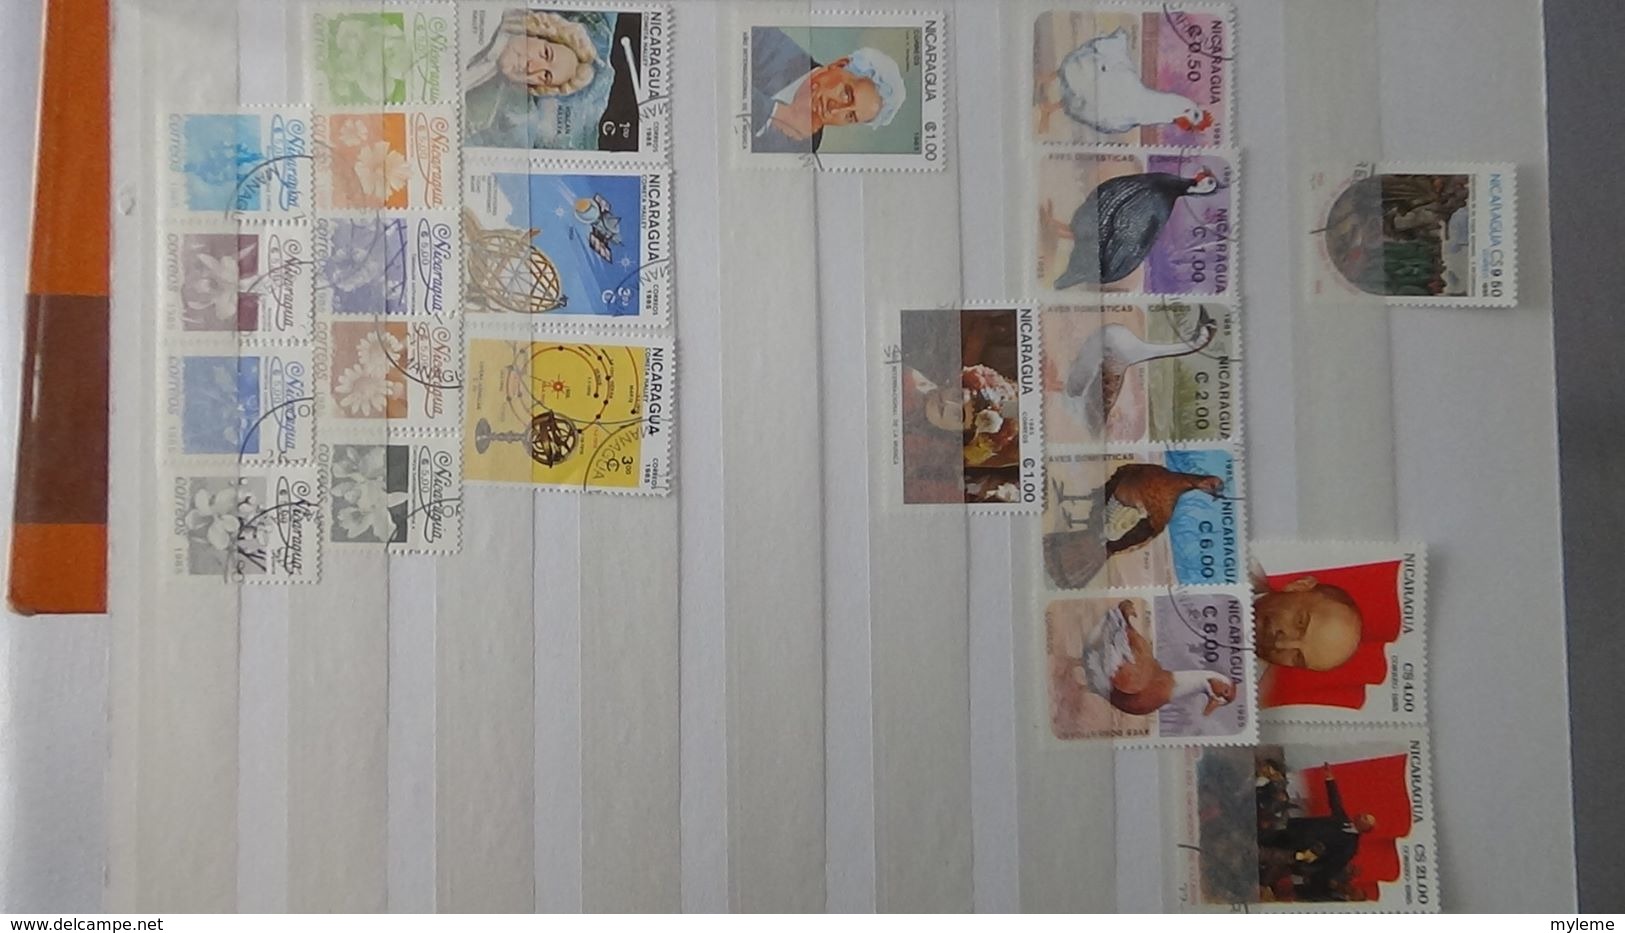 H6 Très belle collection du NICARAGUA dont timbres de  service. A saisir !!!